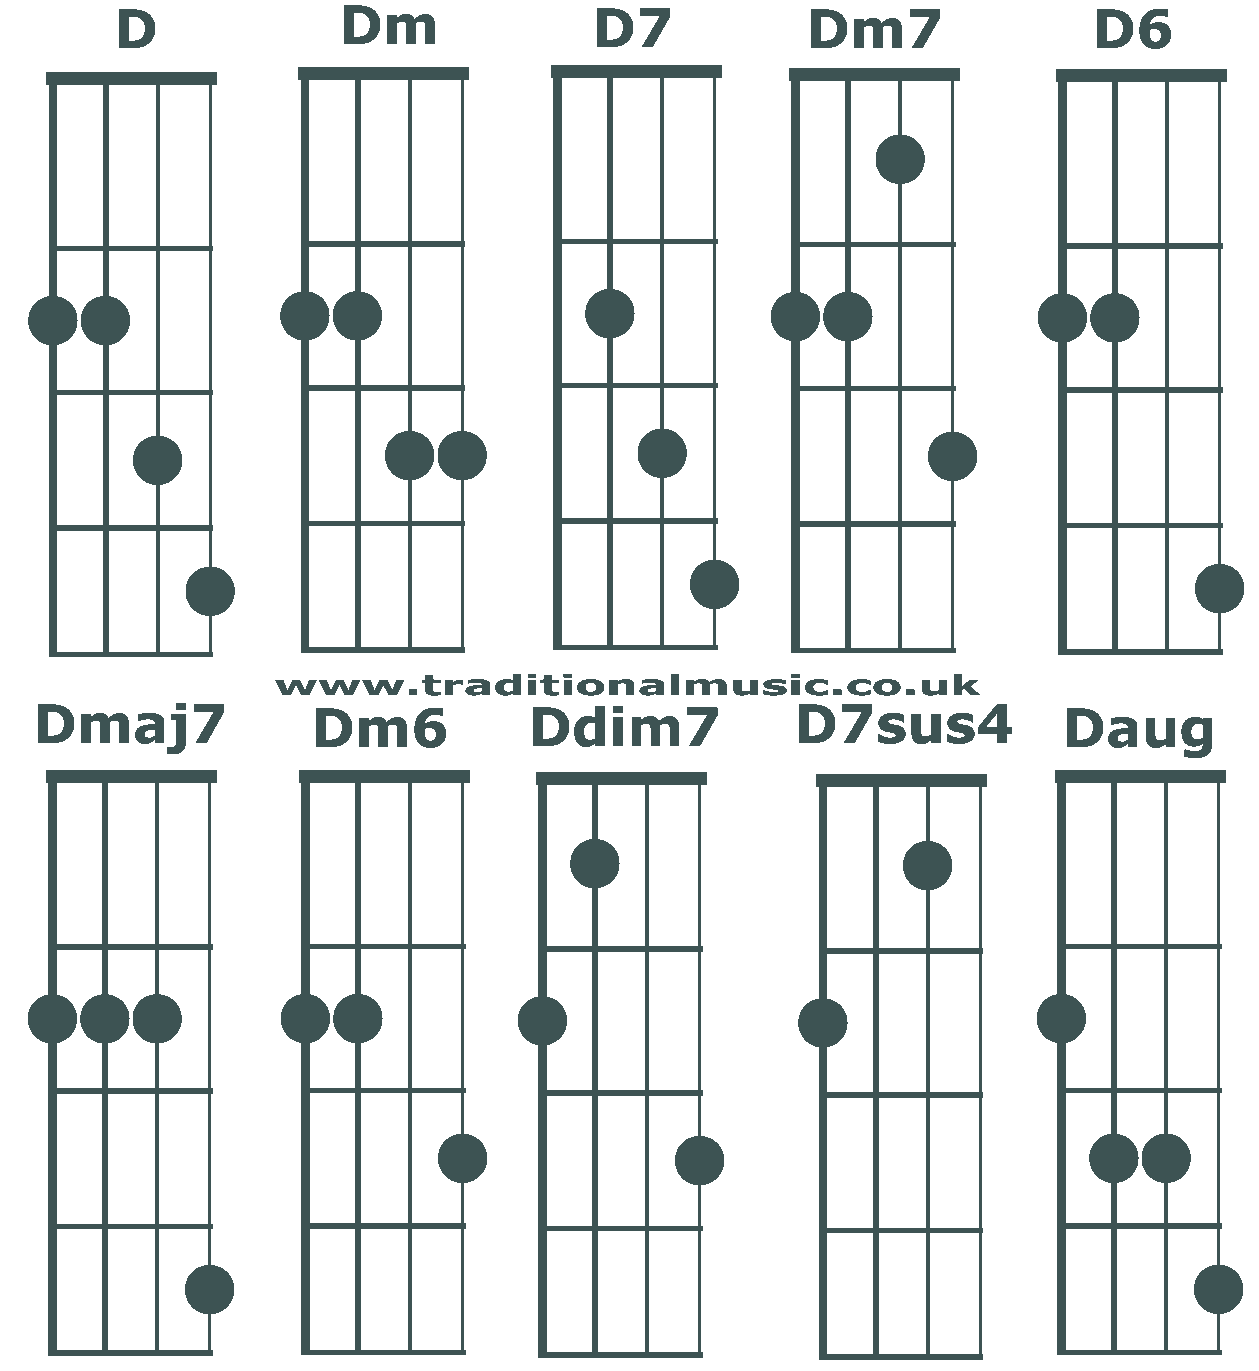 Banjo C tuning chords beginning D